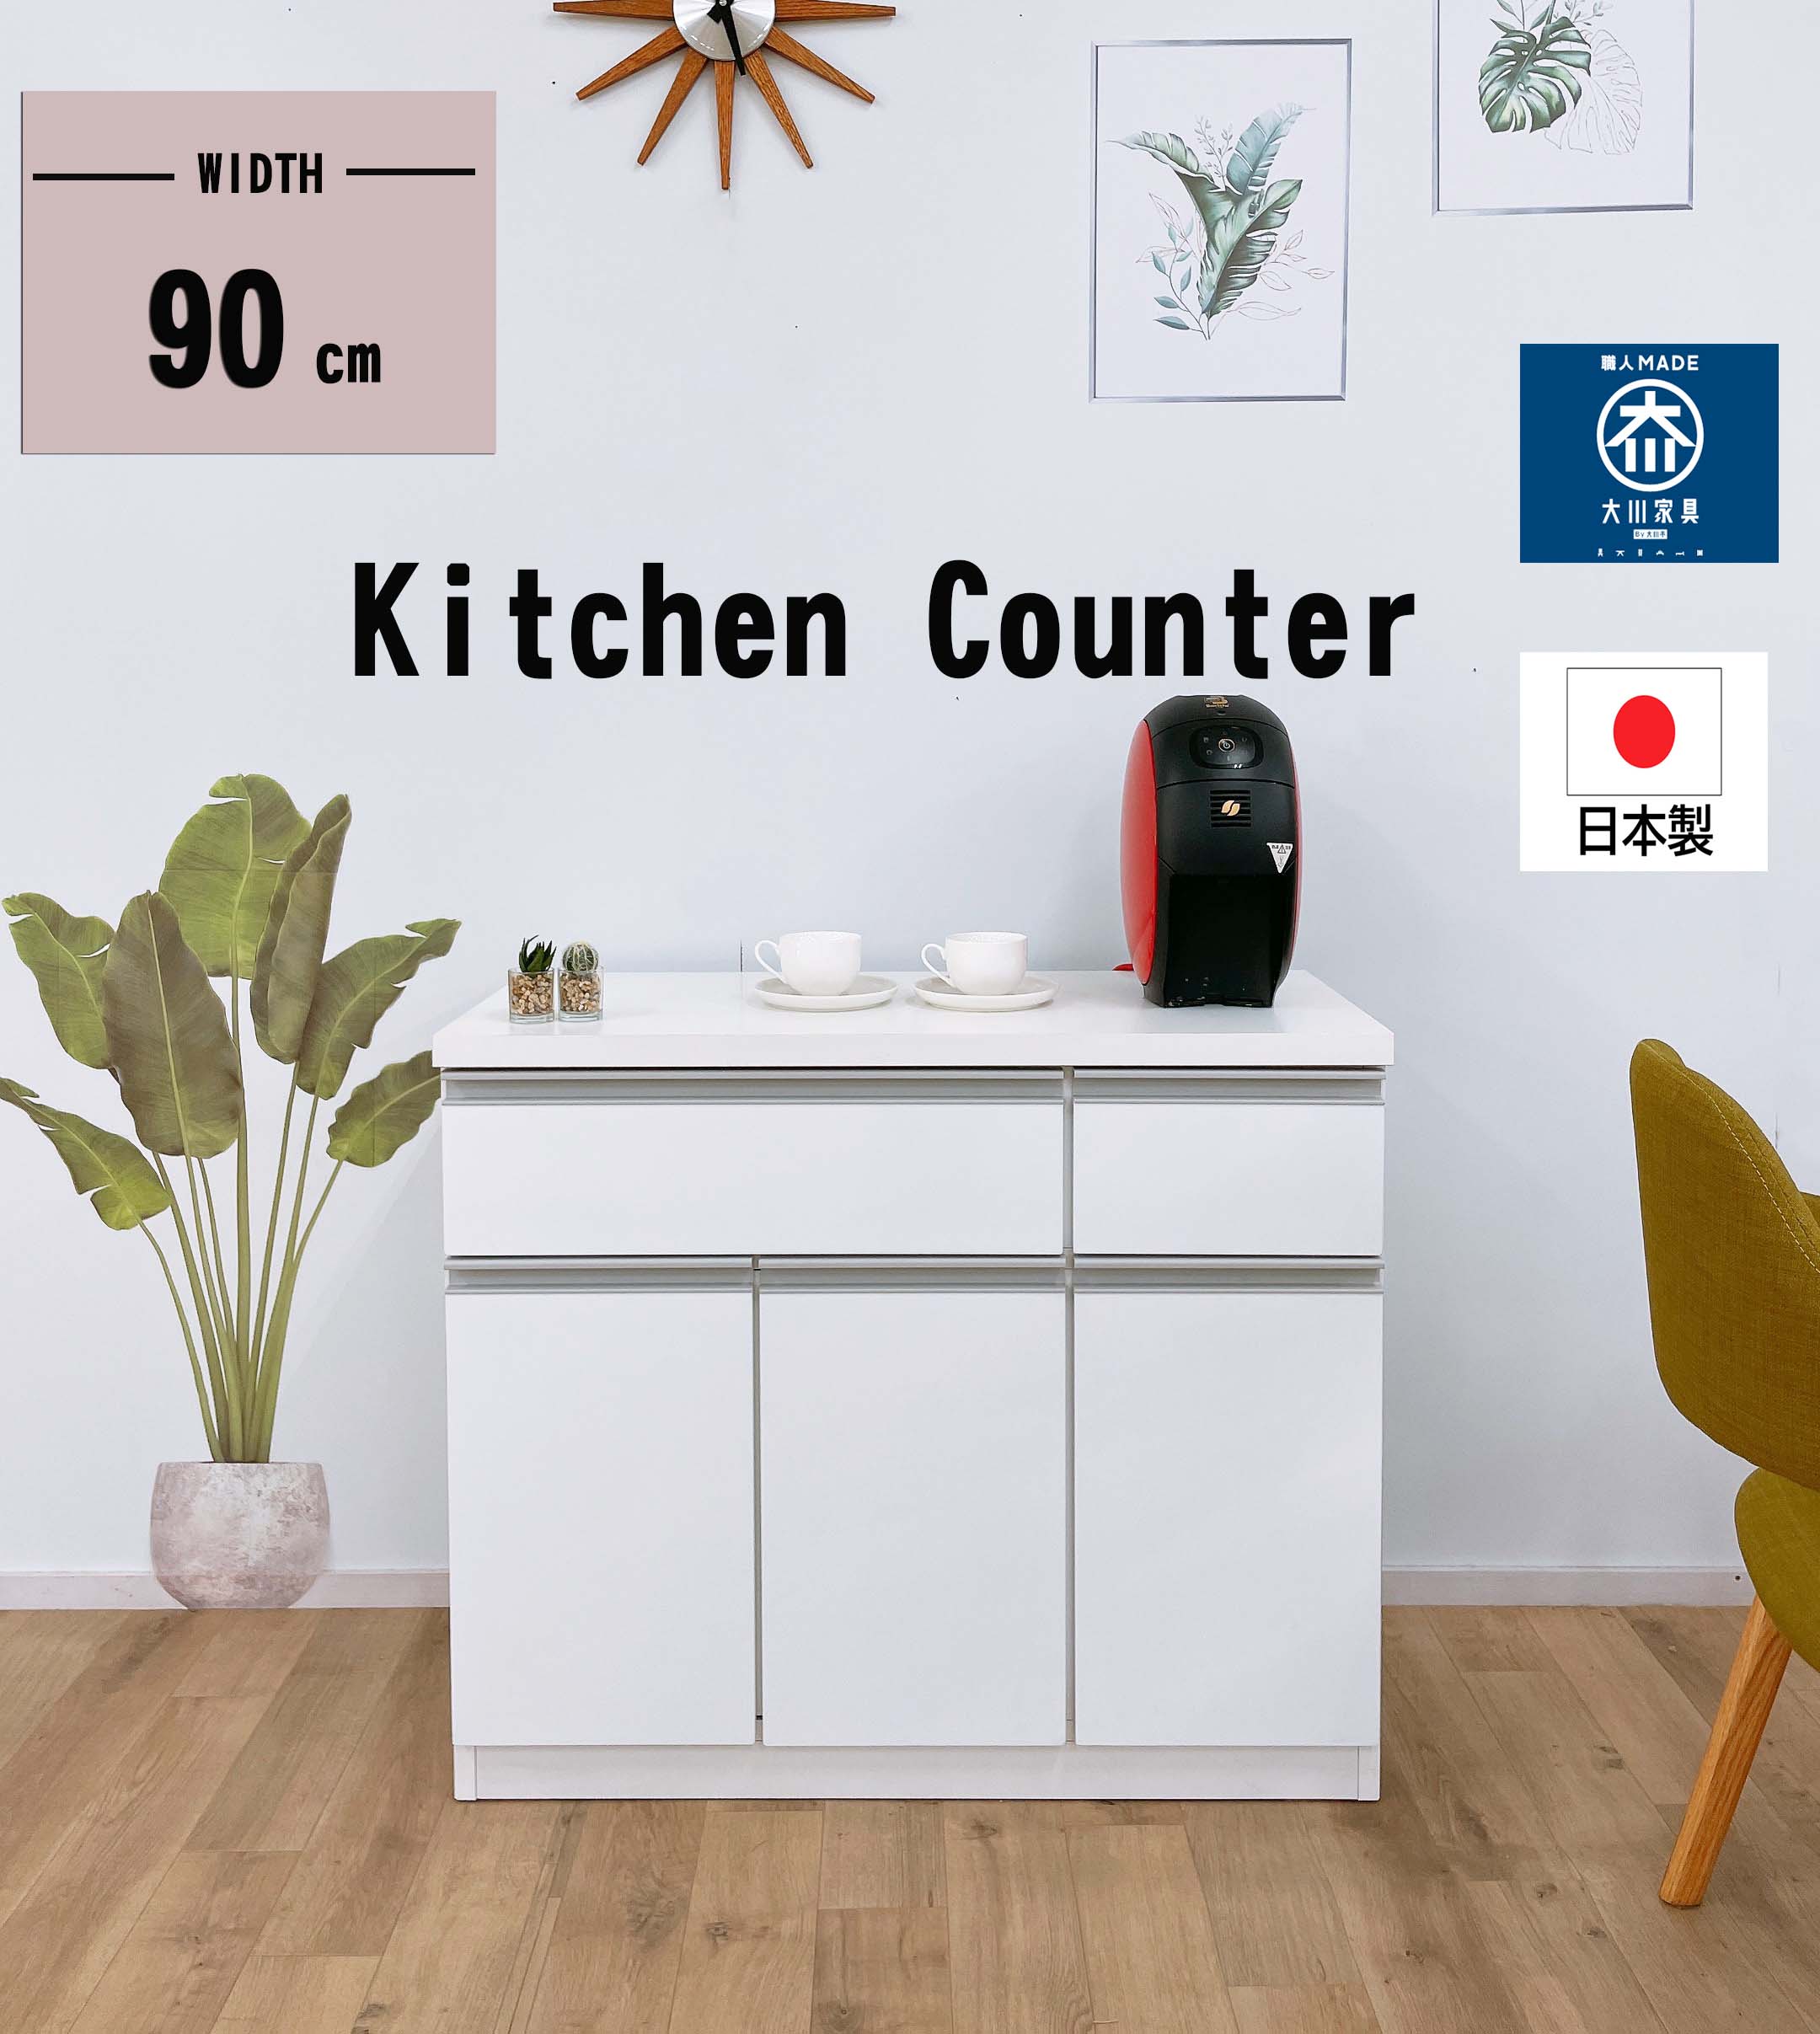 【新品】キッチンカウンター90キッチンラック 激安カウンター 格安カウンター kitchen キッチン 安いキッチン用品のサムネイル